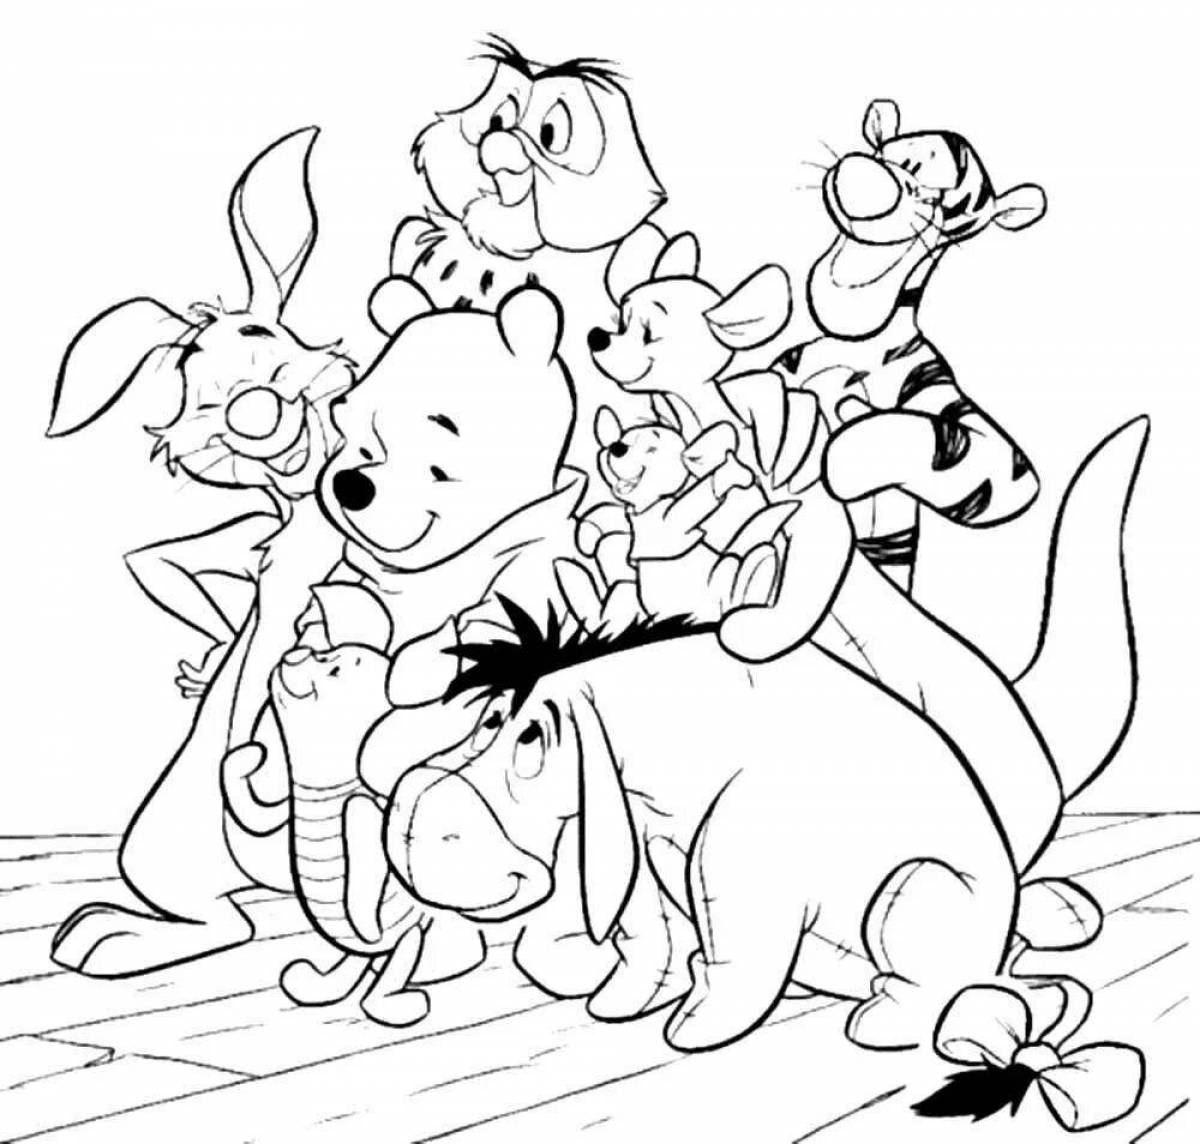 Раскраска с игривыми мультяшными персонажами для детей 6-7 лет